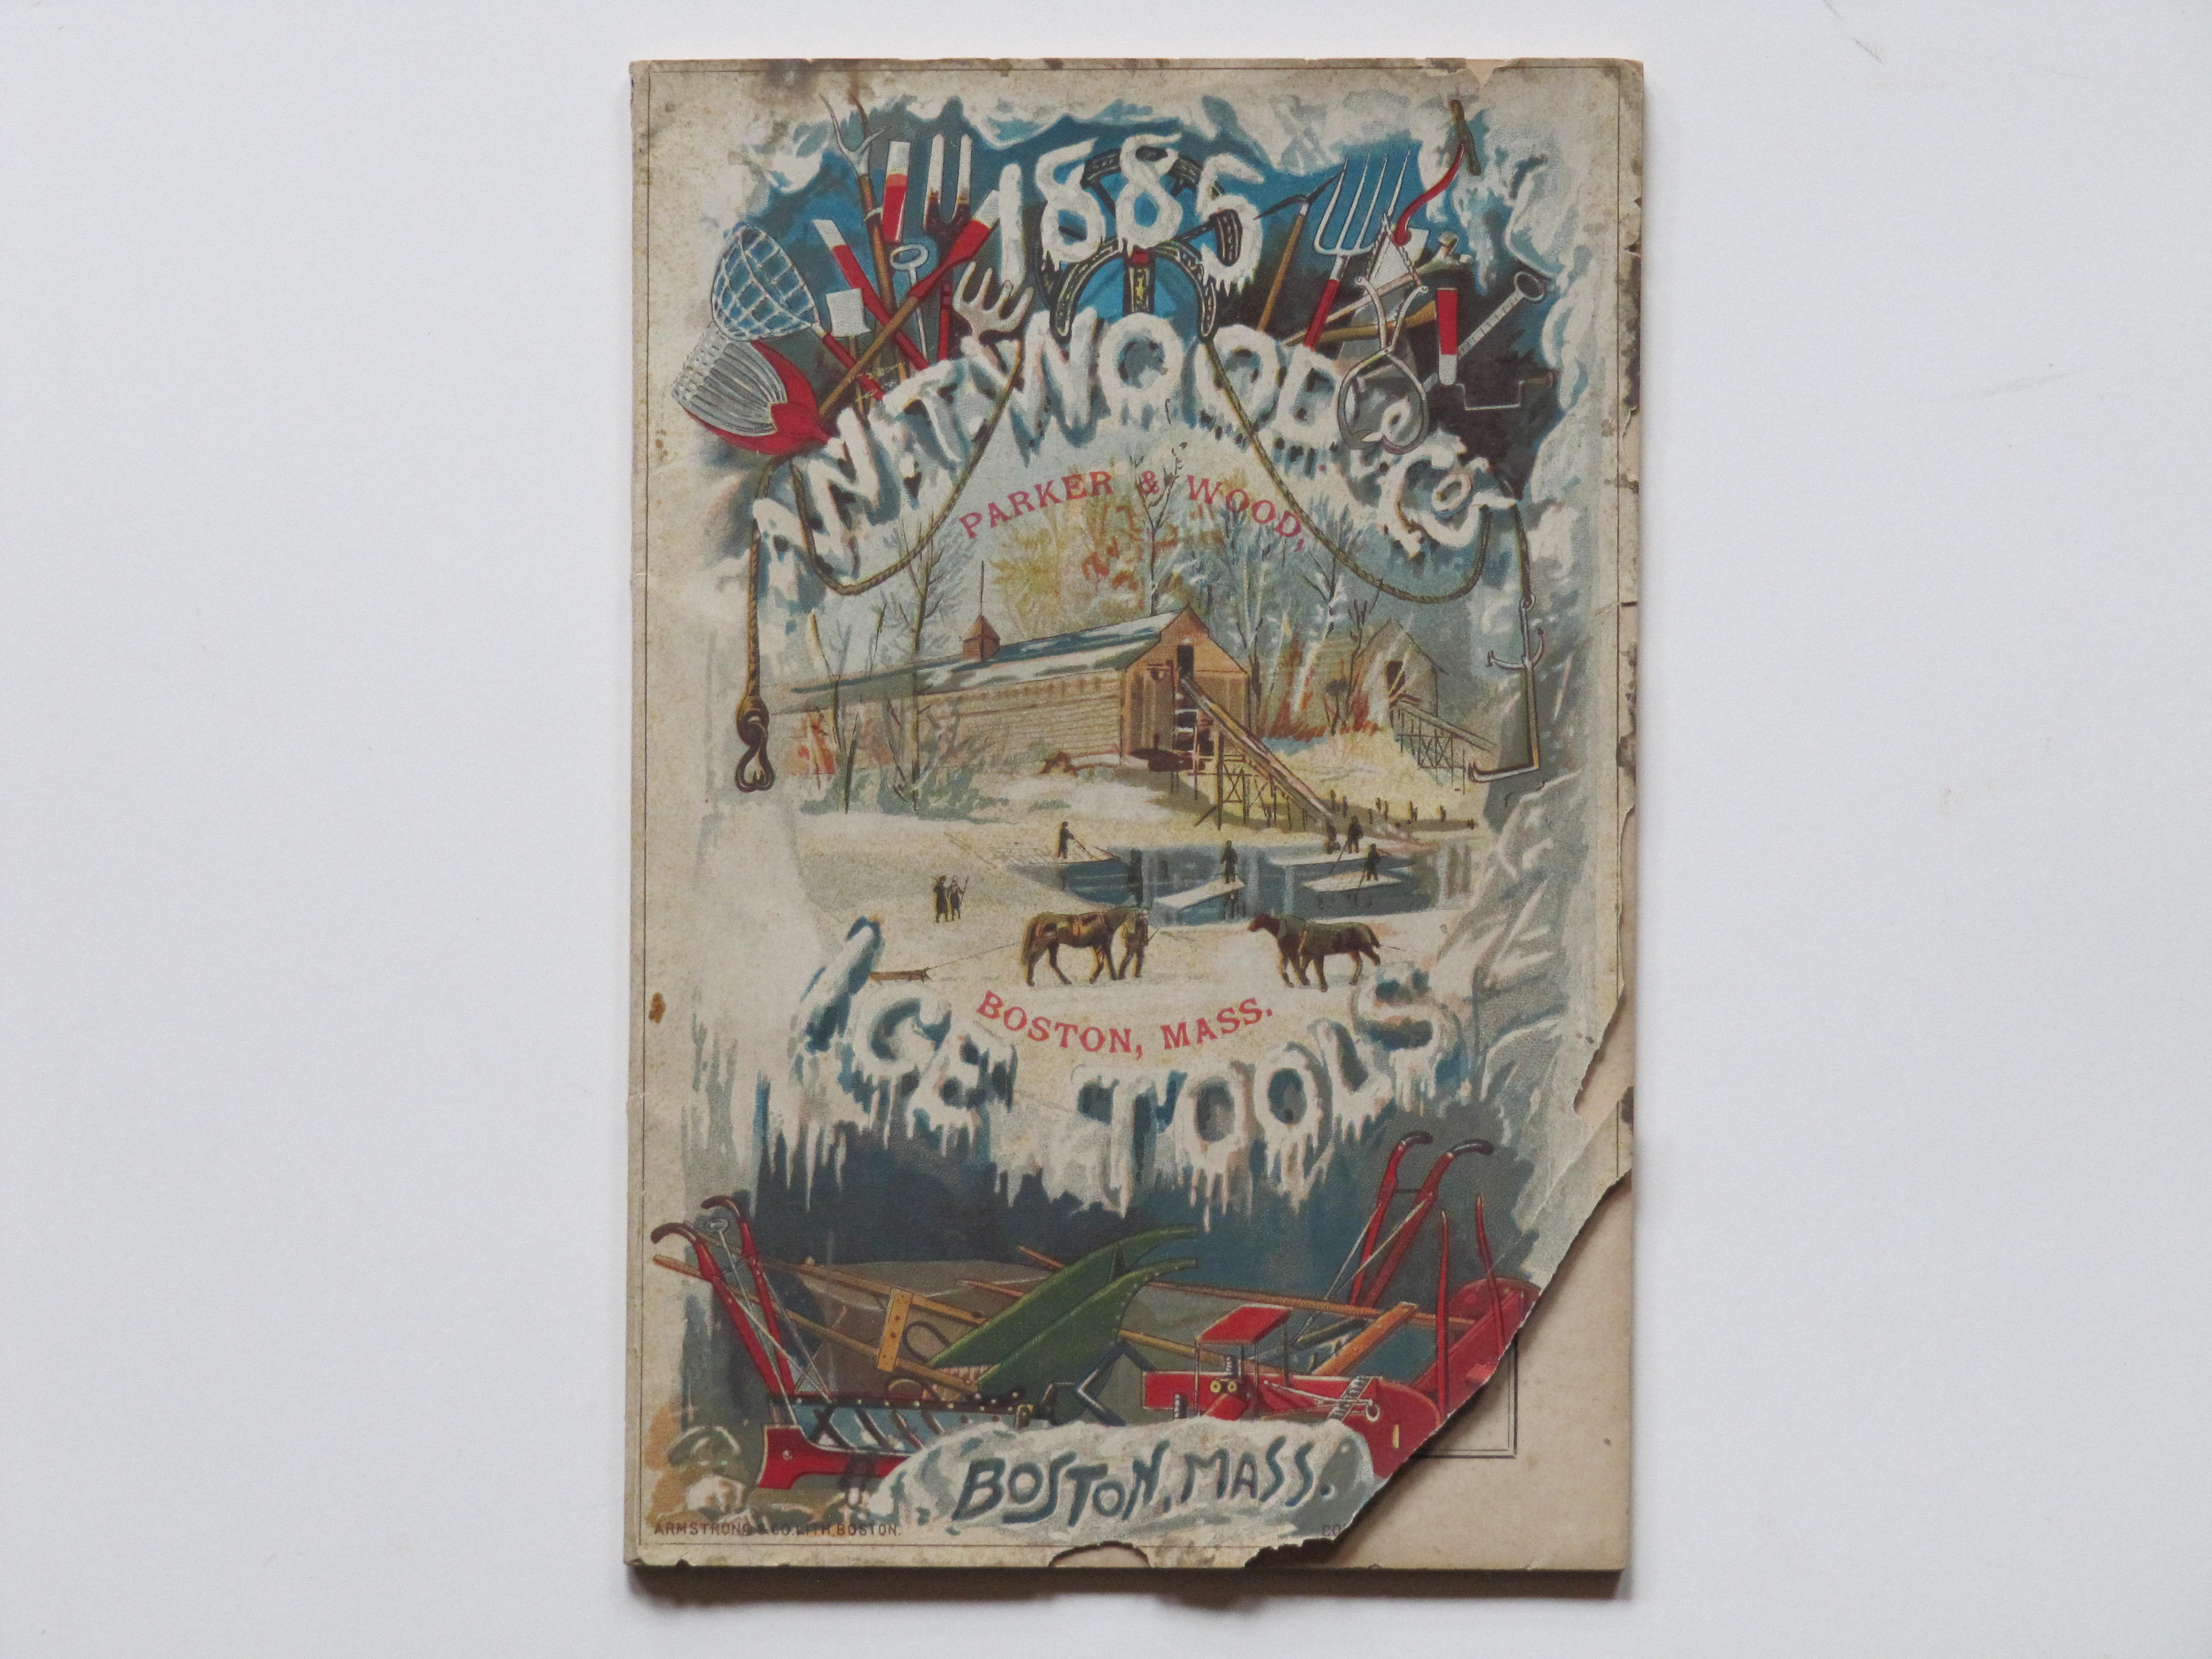 W T Wood & Co, Boston Mass 1885